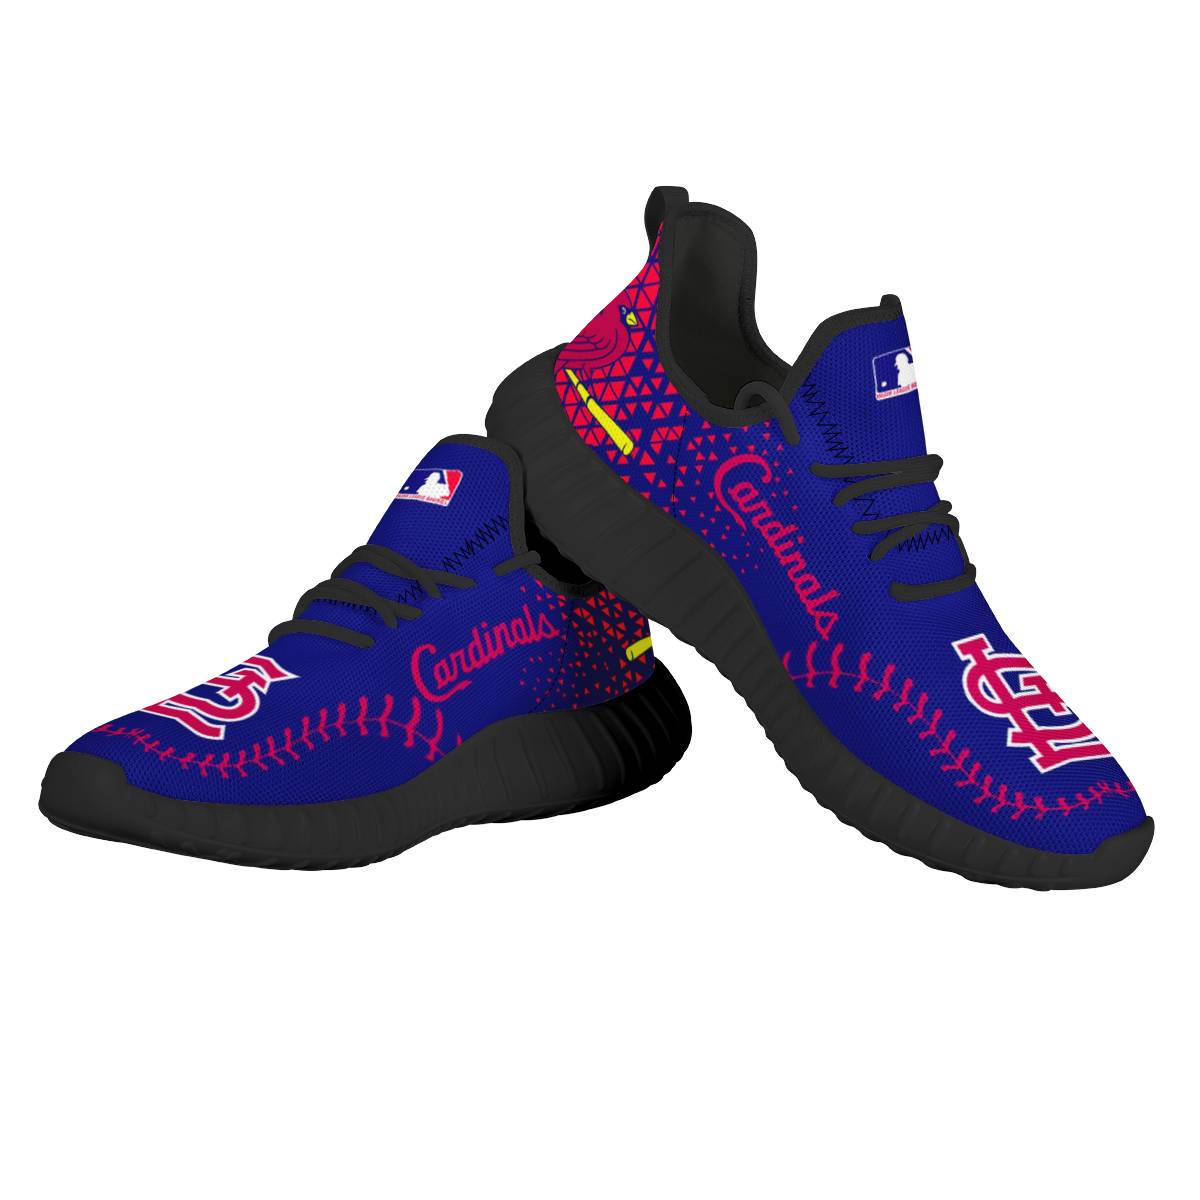 Men's St. Louis Cardinals Mesh Knit Sneakers/Shoes 003